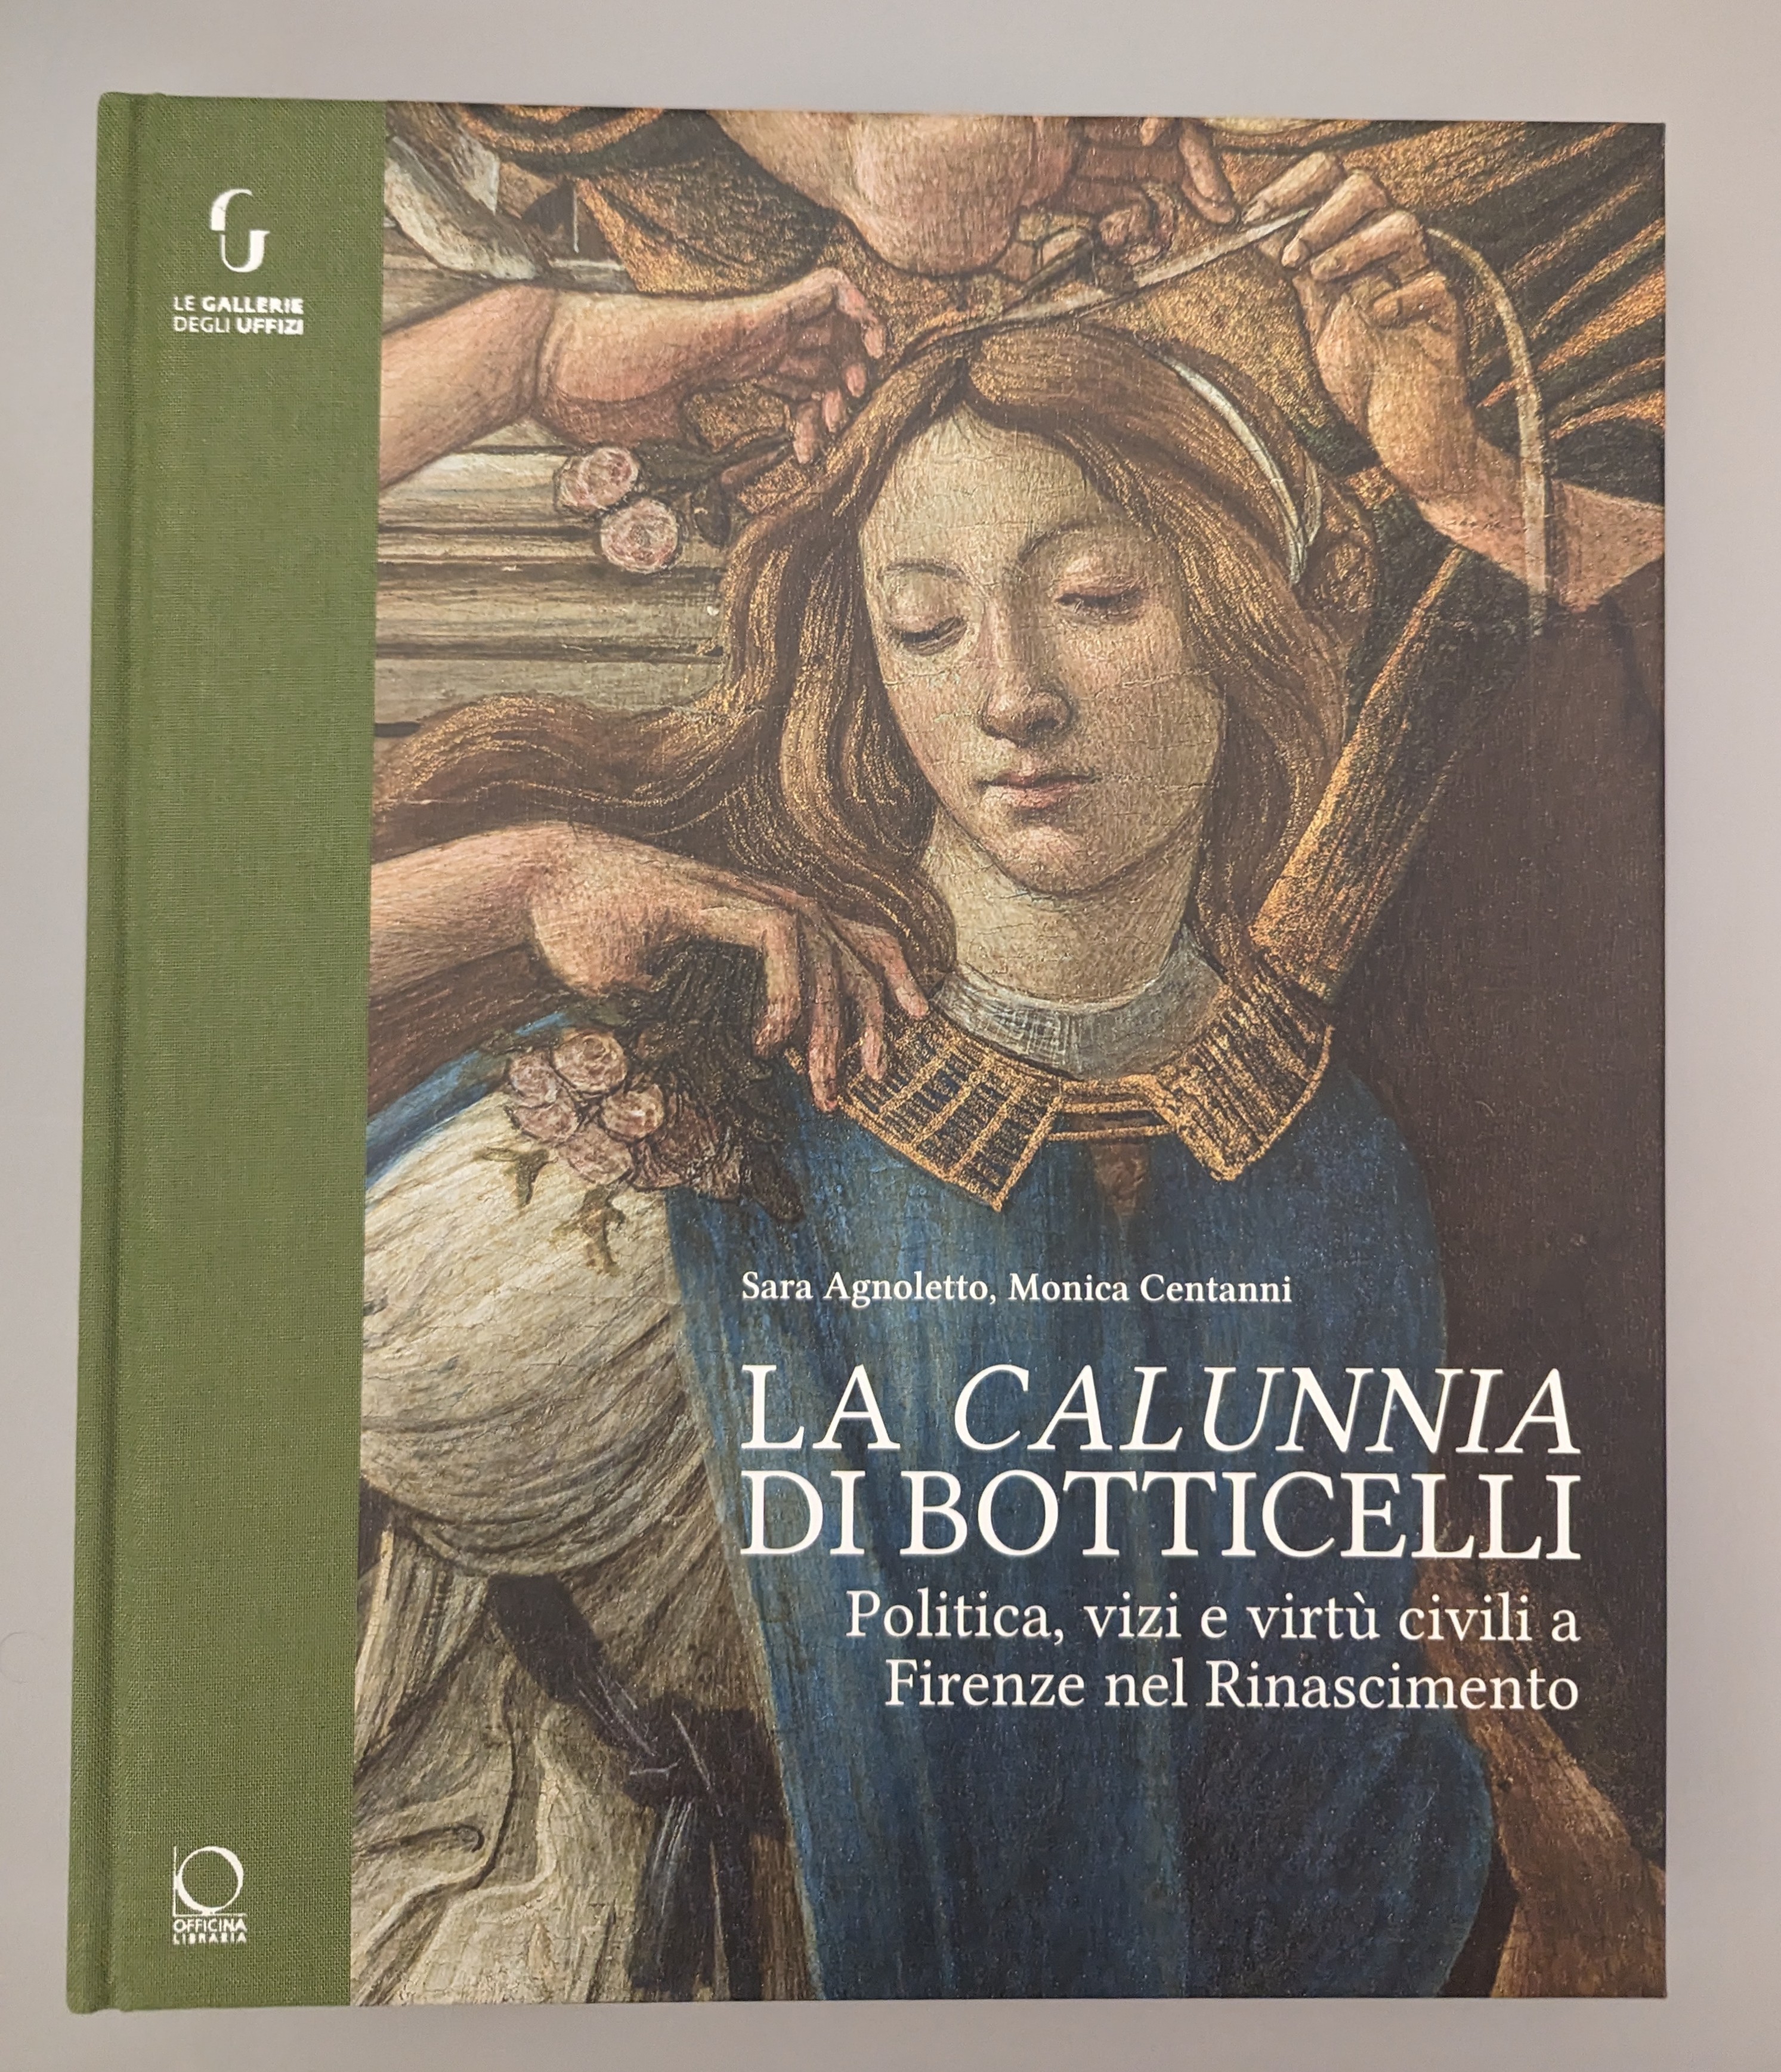 La Calunnia di Botticelli, copertina del libro (Fonte foto Gallerie degli Uffizi)